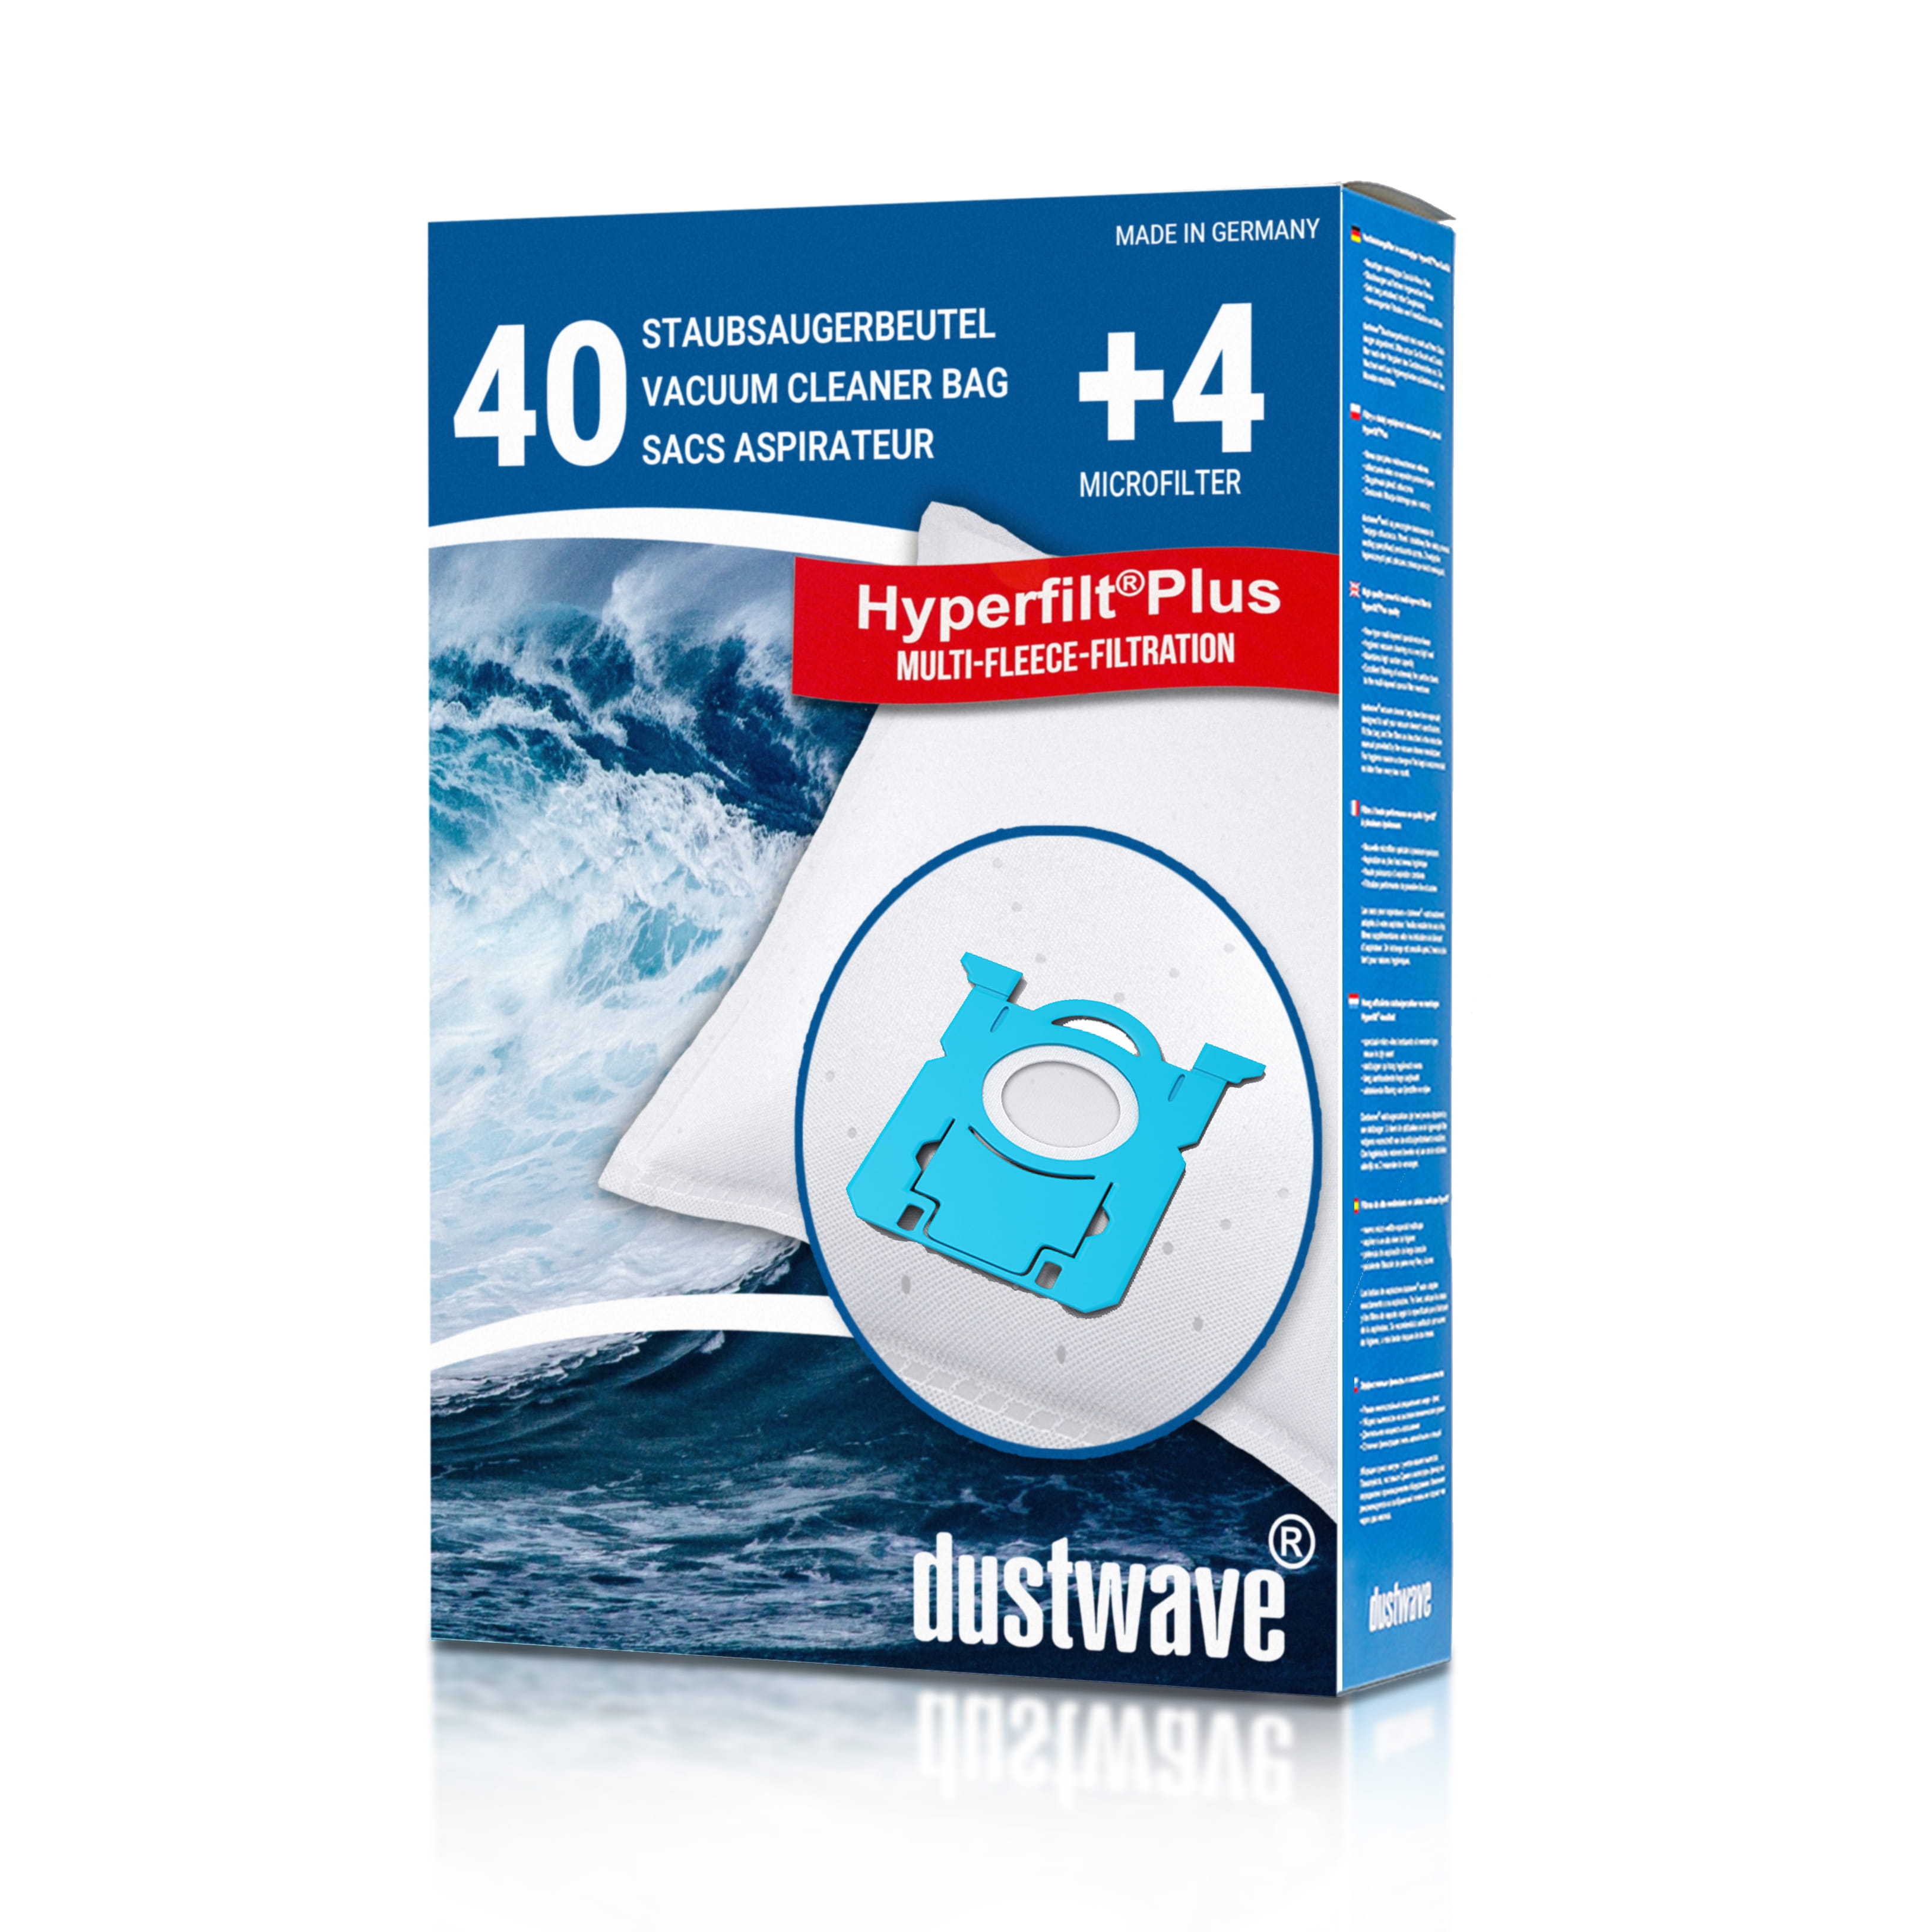 Dustwave® 40 Staubsaugerbeutel für AEG VX7-1 X Power / VX7-1-Öko - hocheffizient, mehrlagiges Mikrovlies mit Hygieneverschluss - Made in Germany